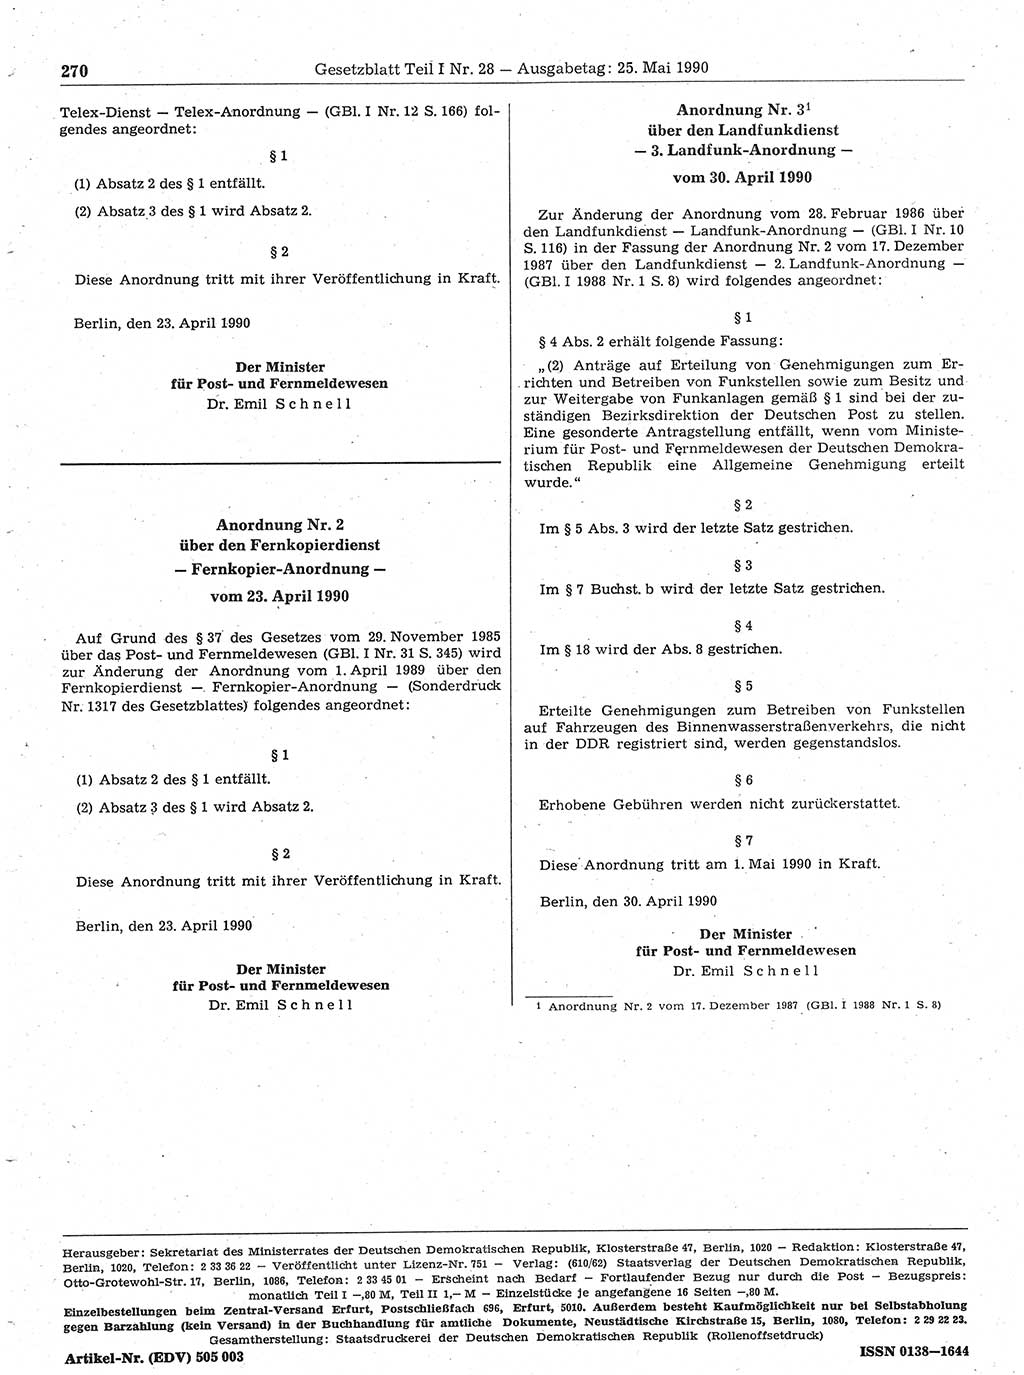 Gesetzblatt (GBl.) der Deutschen Demokratischen Republik (DDR) Teil Ⅰ 1990, Seite 270 (GBl. DDR Ⅰ 1990, S. 270)